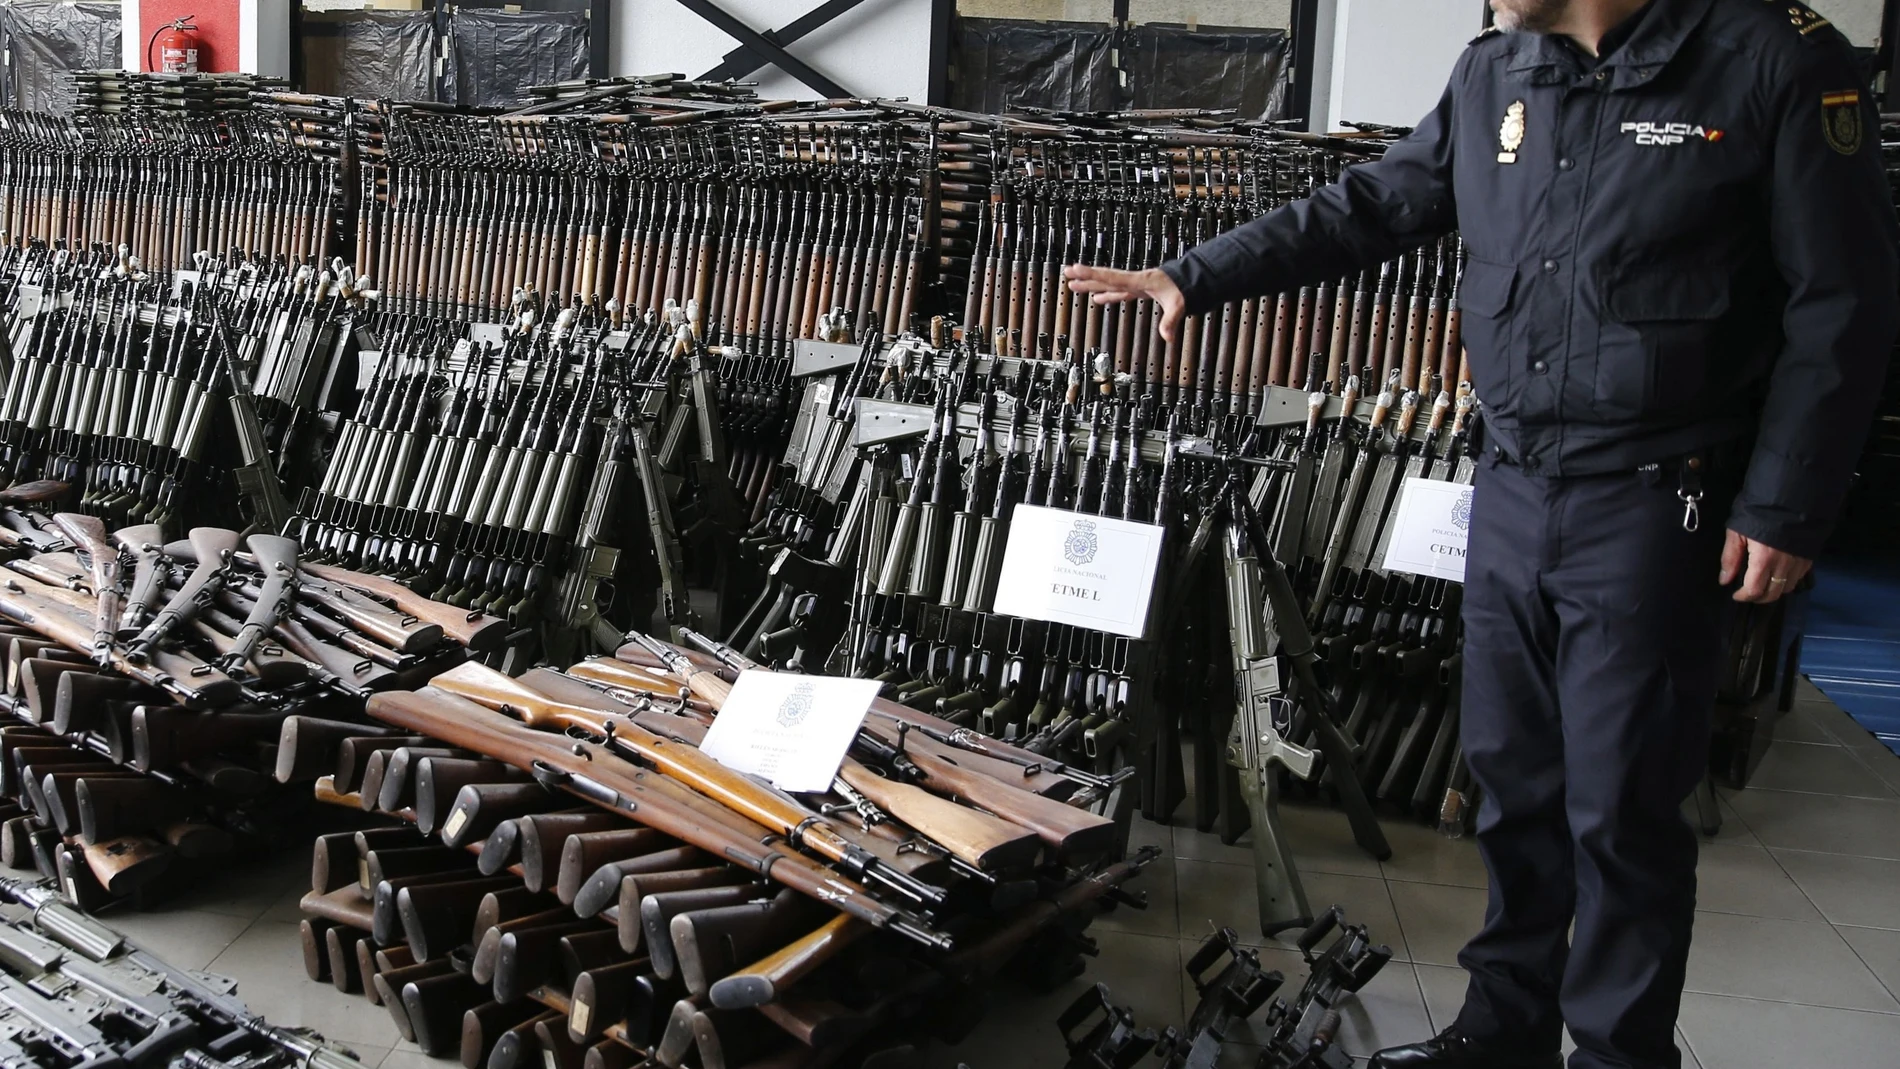 Vista del arsenal de armas expuesto en Bilbao , requisado por la Policía Nacional en el mes de enero de 2017.